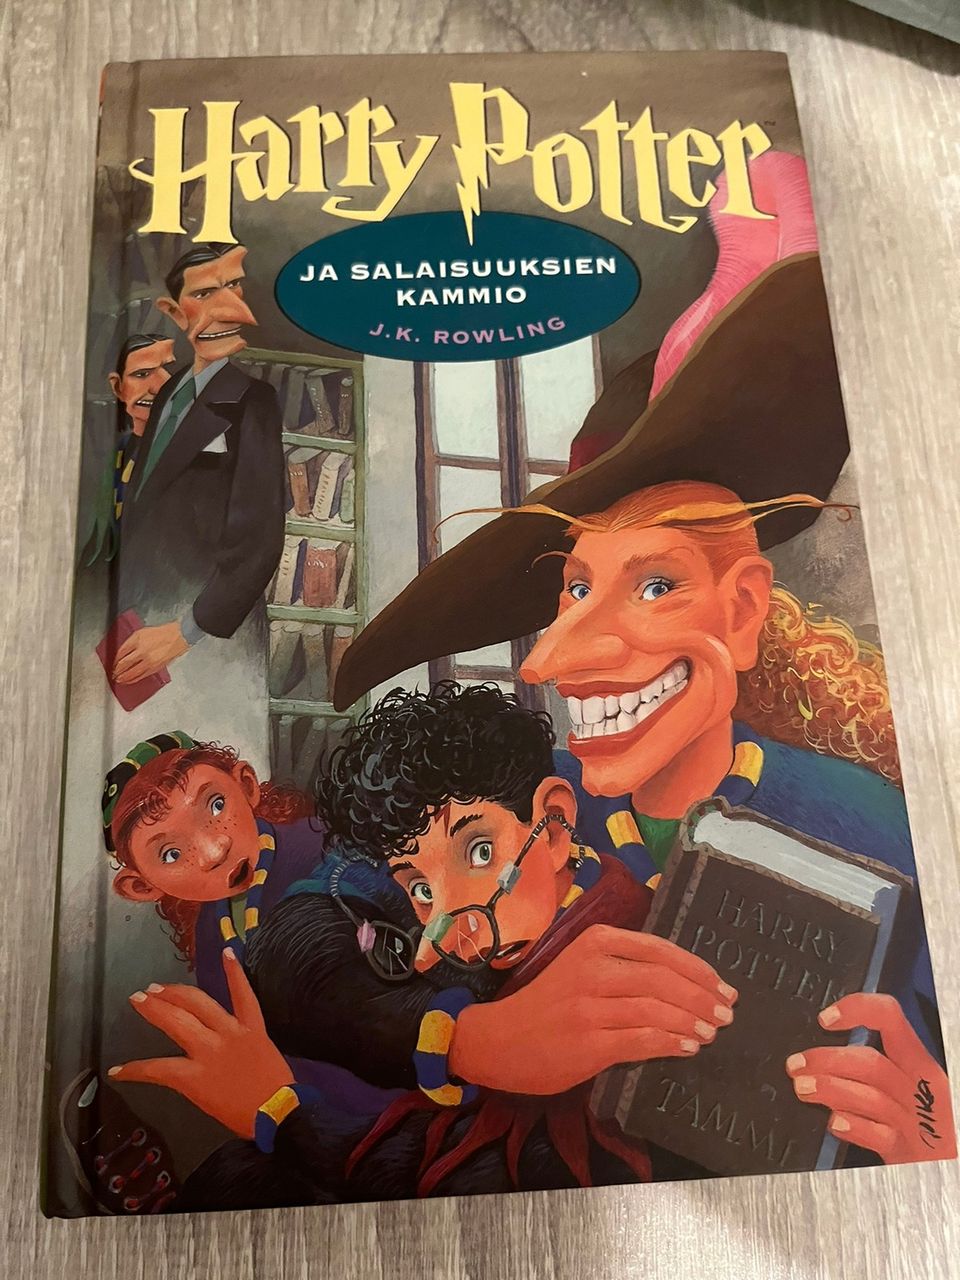 J. K. Rowling - Harry Potter ja Salaisuuksien kammio